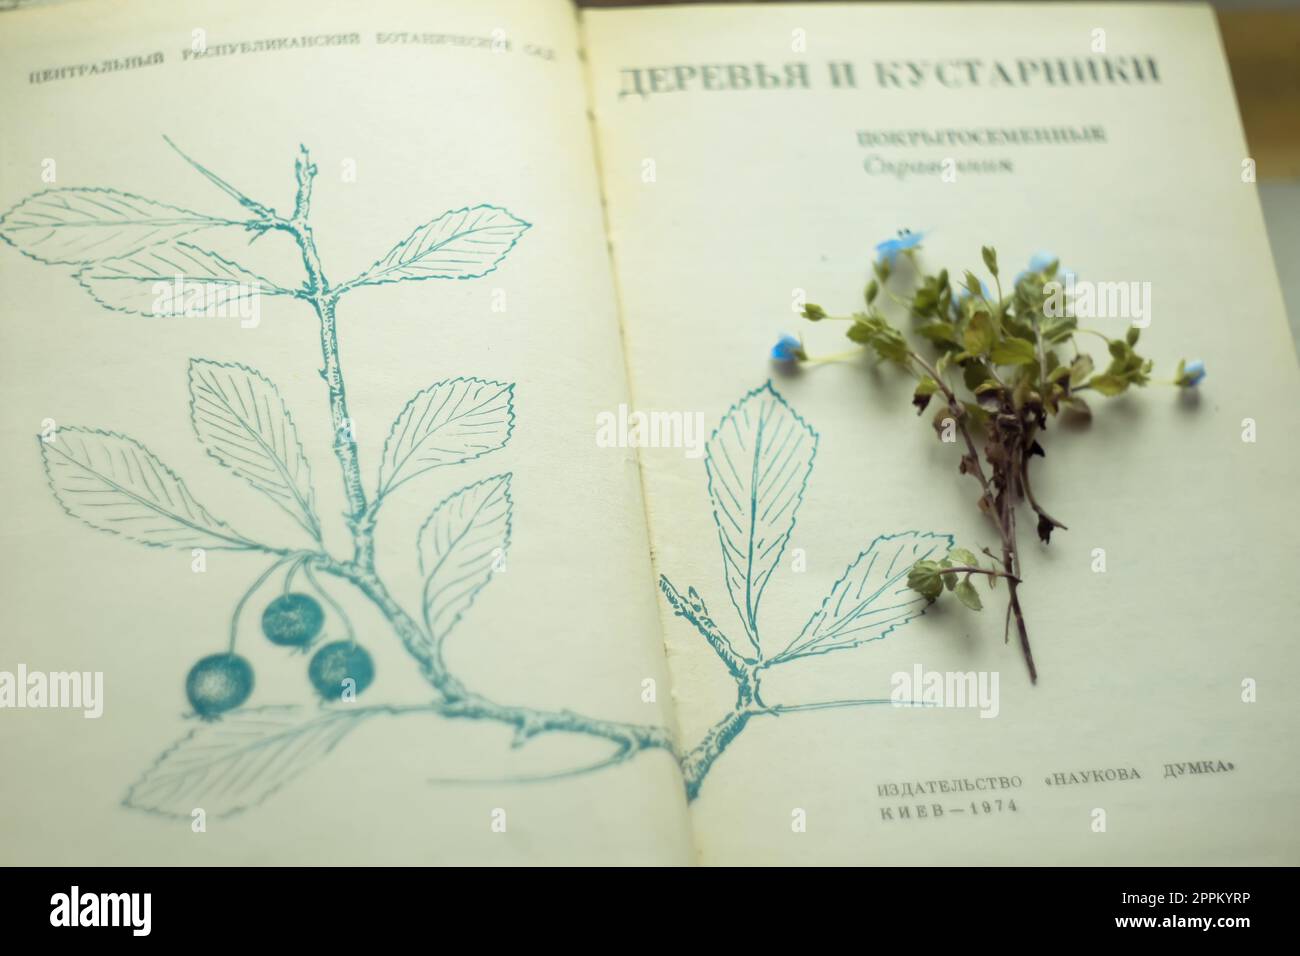 Nahaufnahme blauer Wildblumen-Strauß, der auf offenen Buchseiten liegt Konzeptfoto Stockfoto